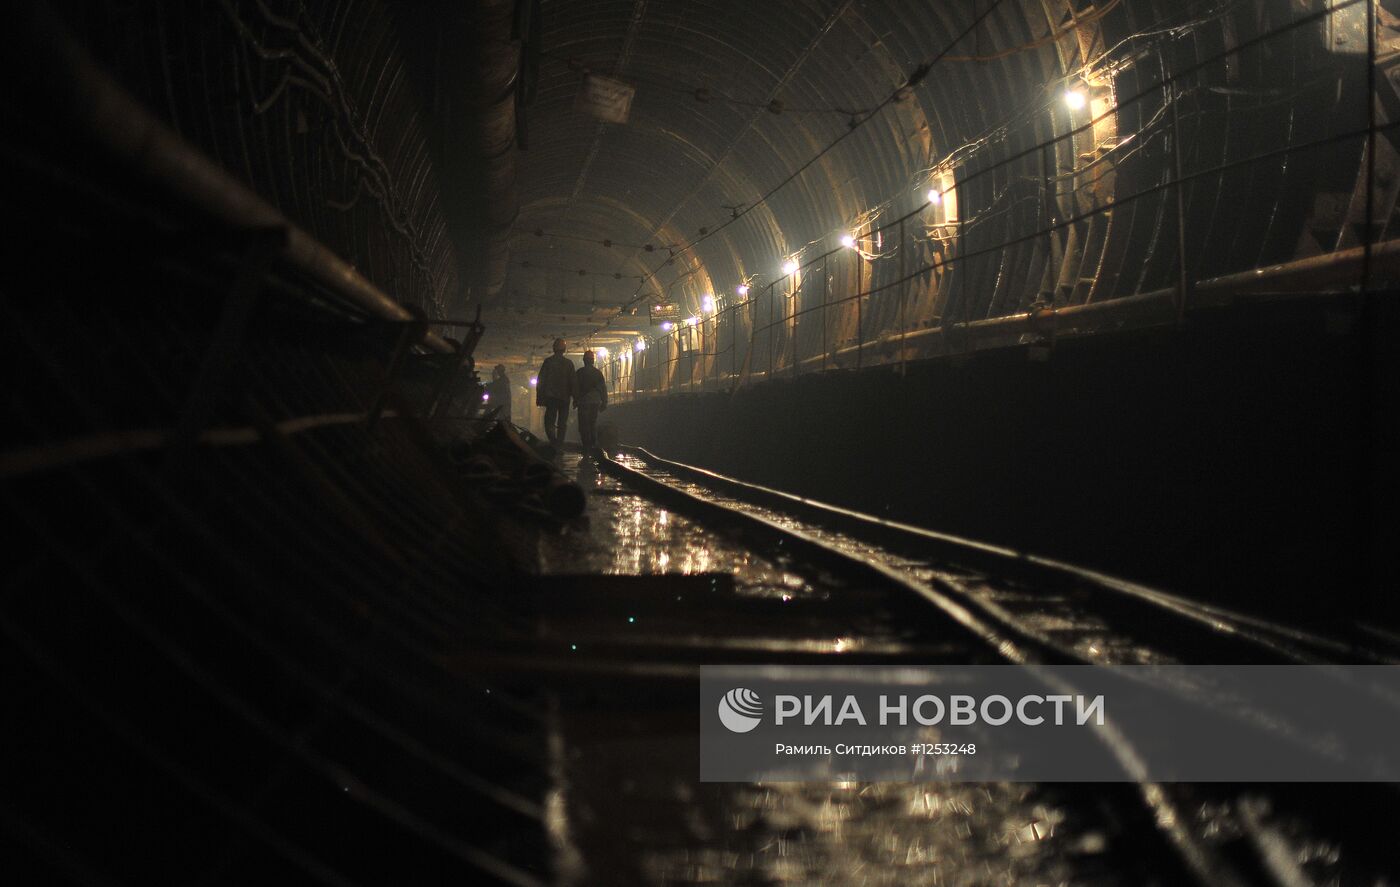 Строительство станции метро " Петровско-Разумовская II"